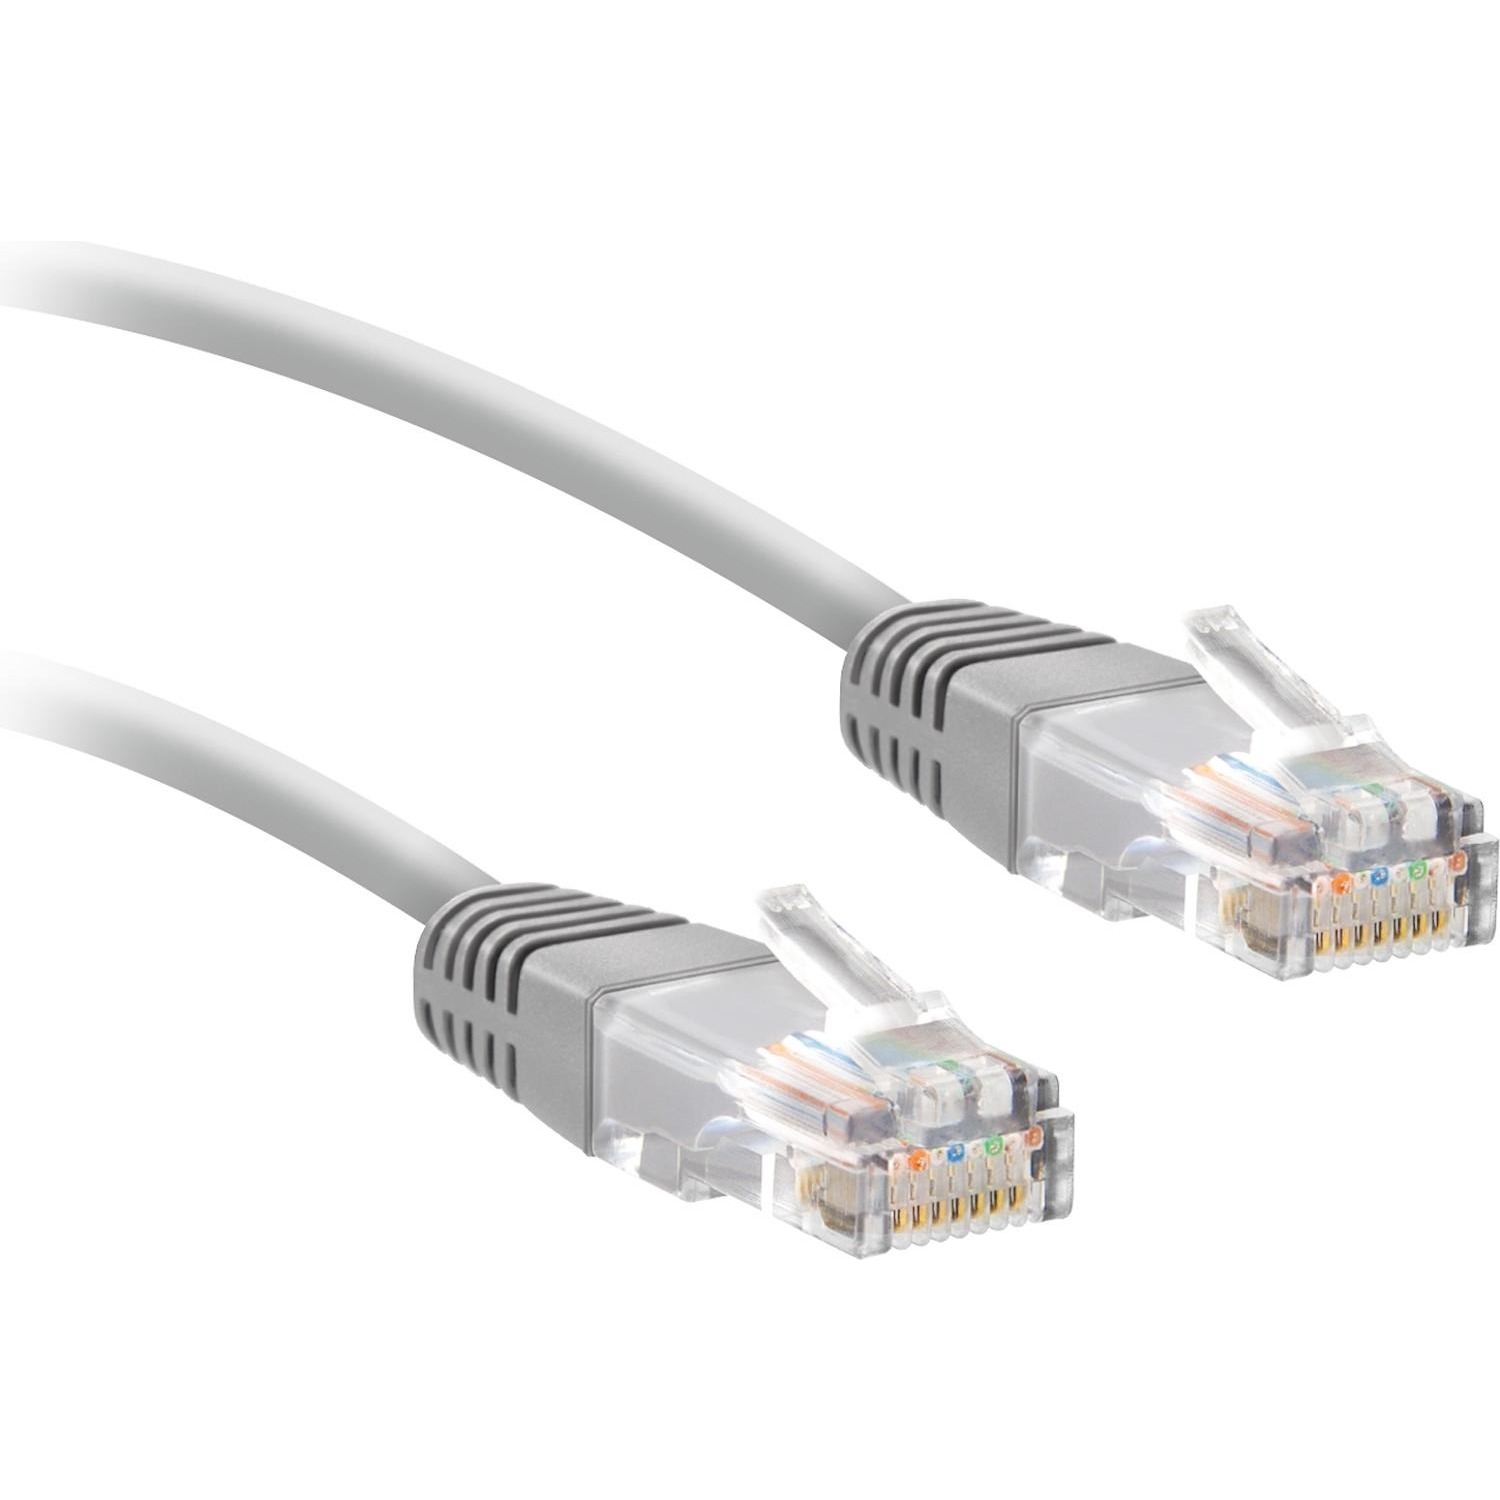 Cavo di rete per PC UTP cat 5e connettori RJ45, lunghezza cavo 2